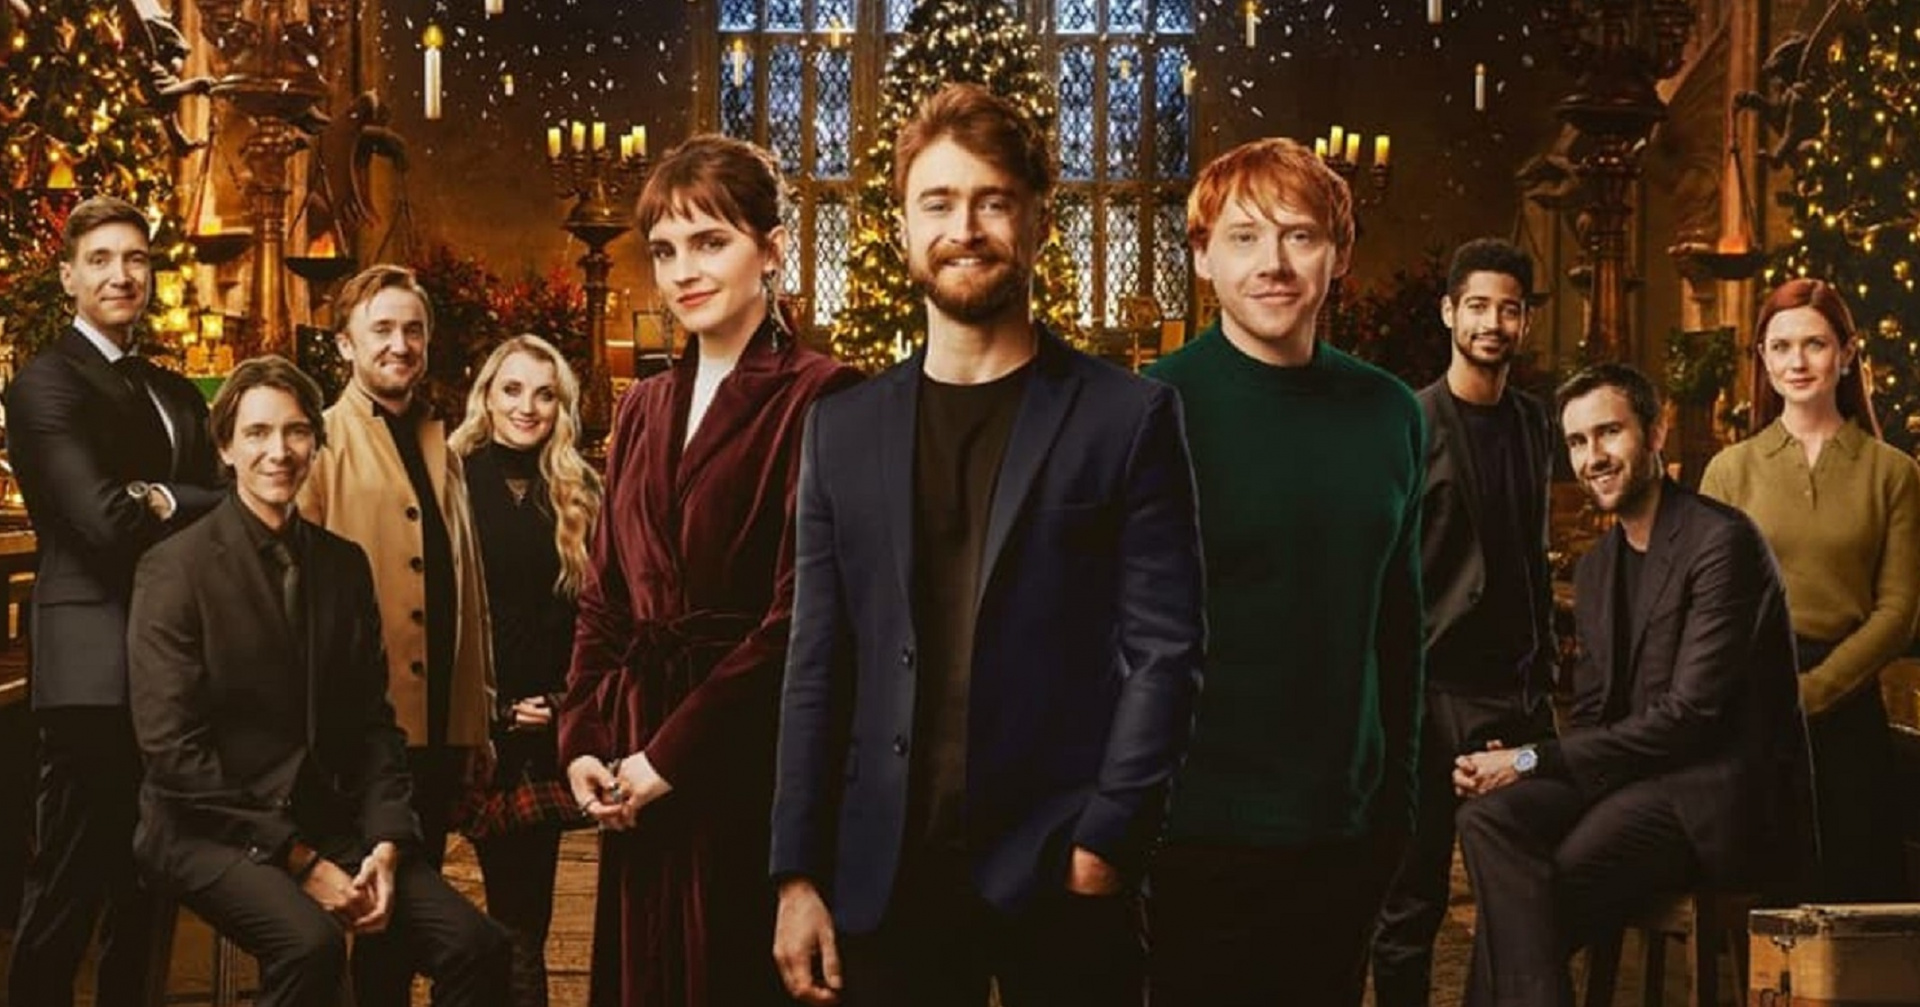 Вышел трейлер спецэпизода «Гарри Поттер 20 лет спустя: возвращение в Хогвартс» — Игромания